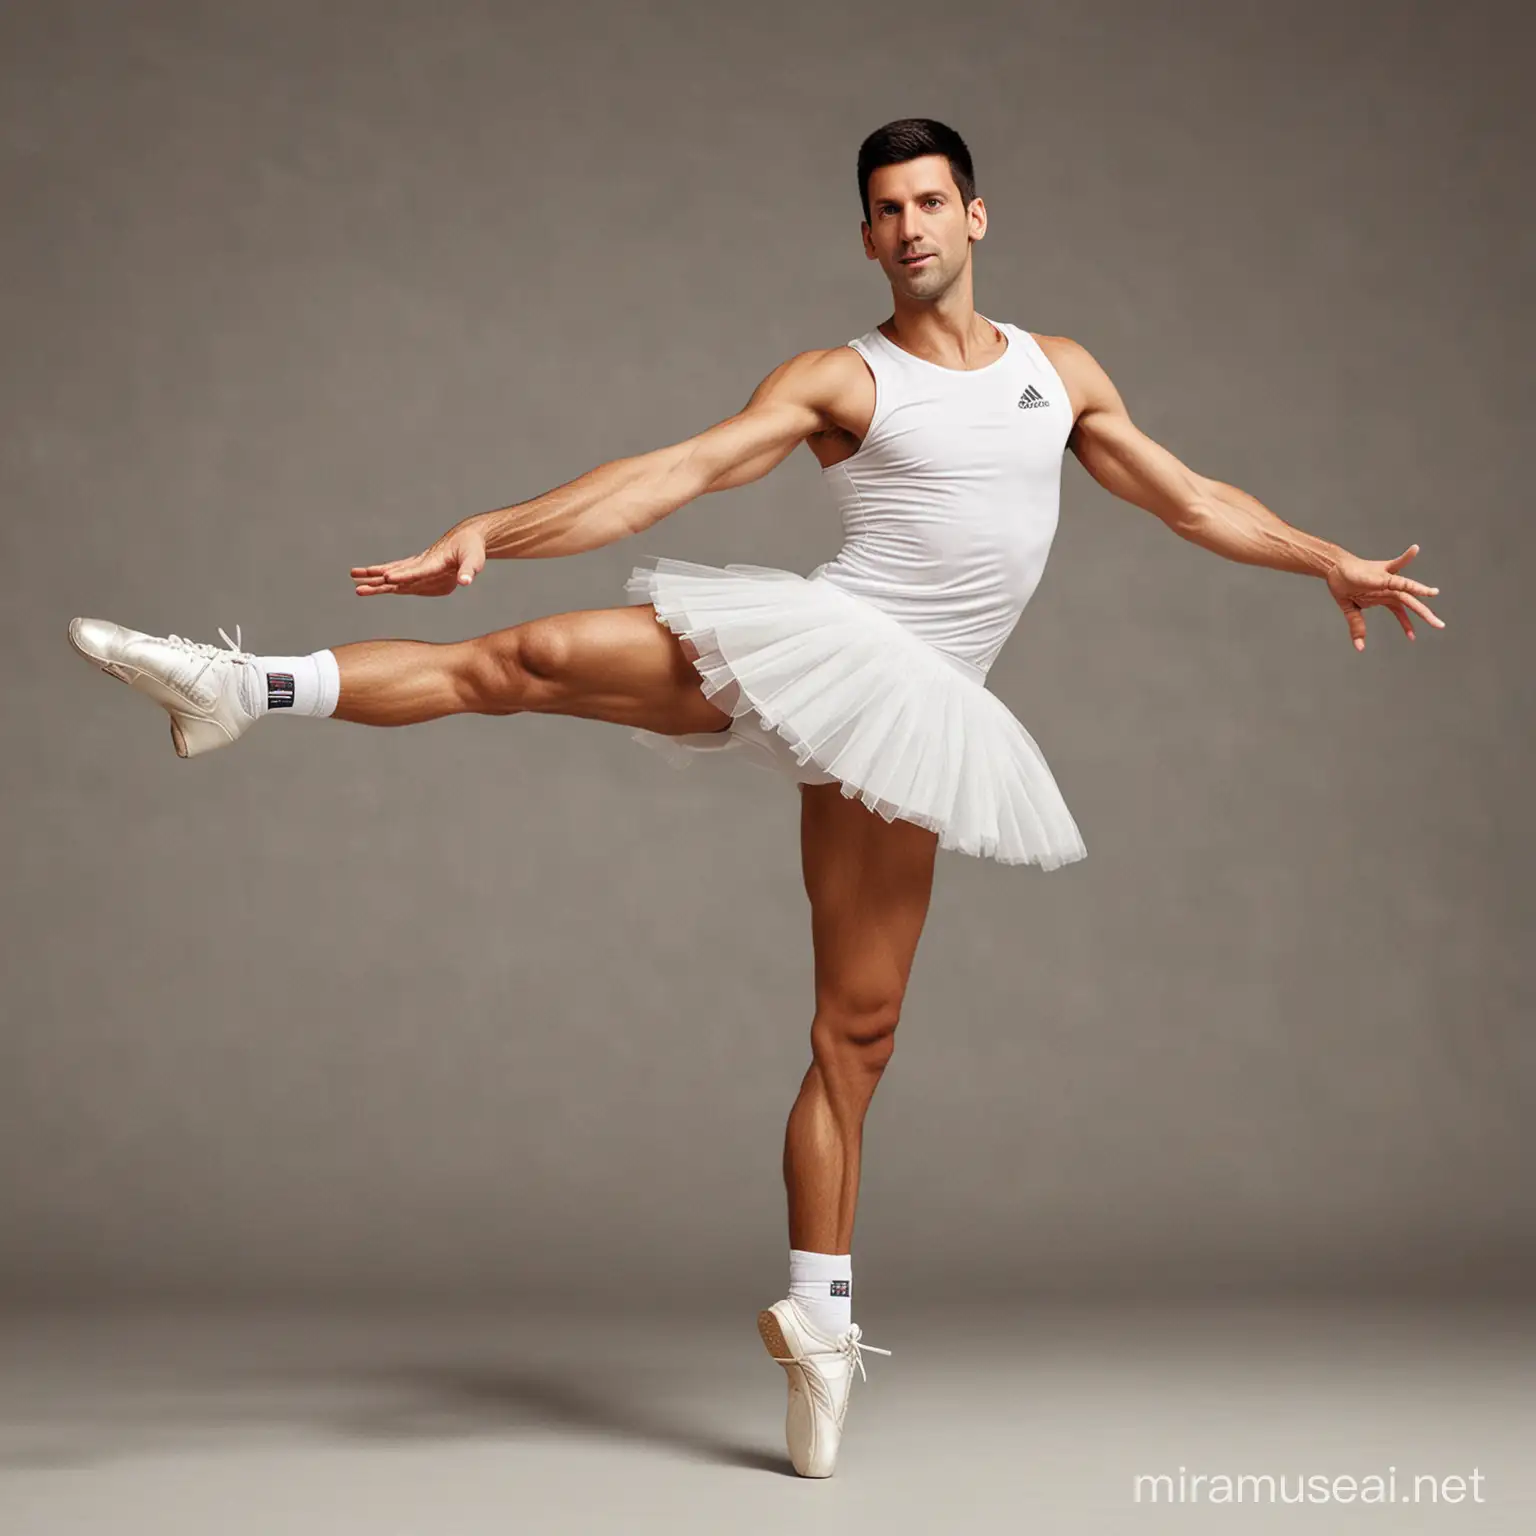 Novak Djokovic Ballet Performance Graceful Tennis Champion in Elegant Ballet Pose